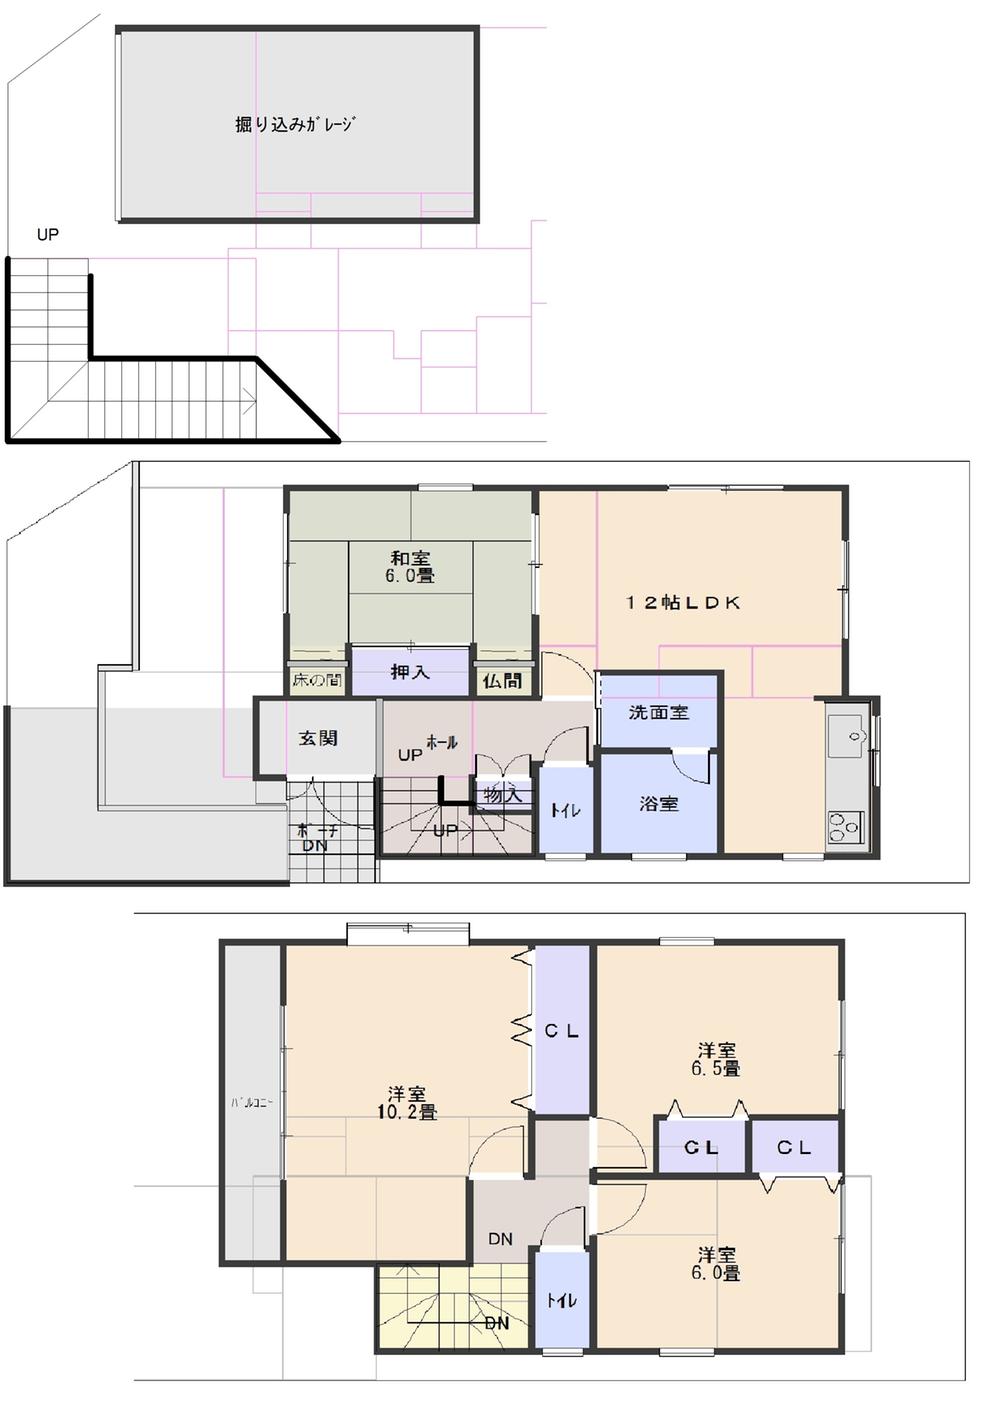 Floor plan. 21 million yen, 4LDK, Land area 104.26 sq m , Building area 117.63 sq m